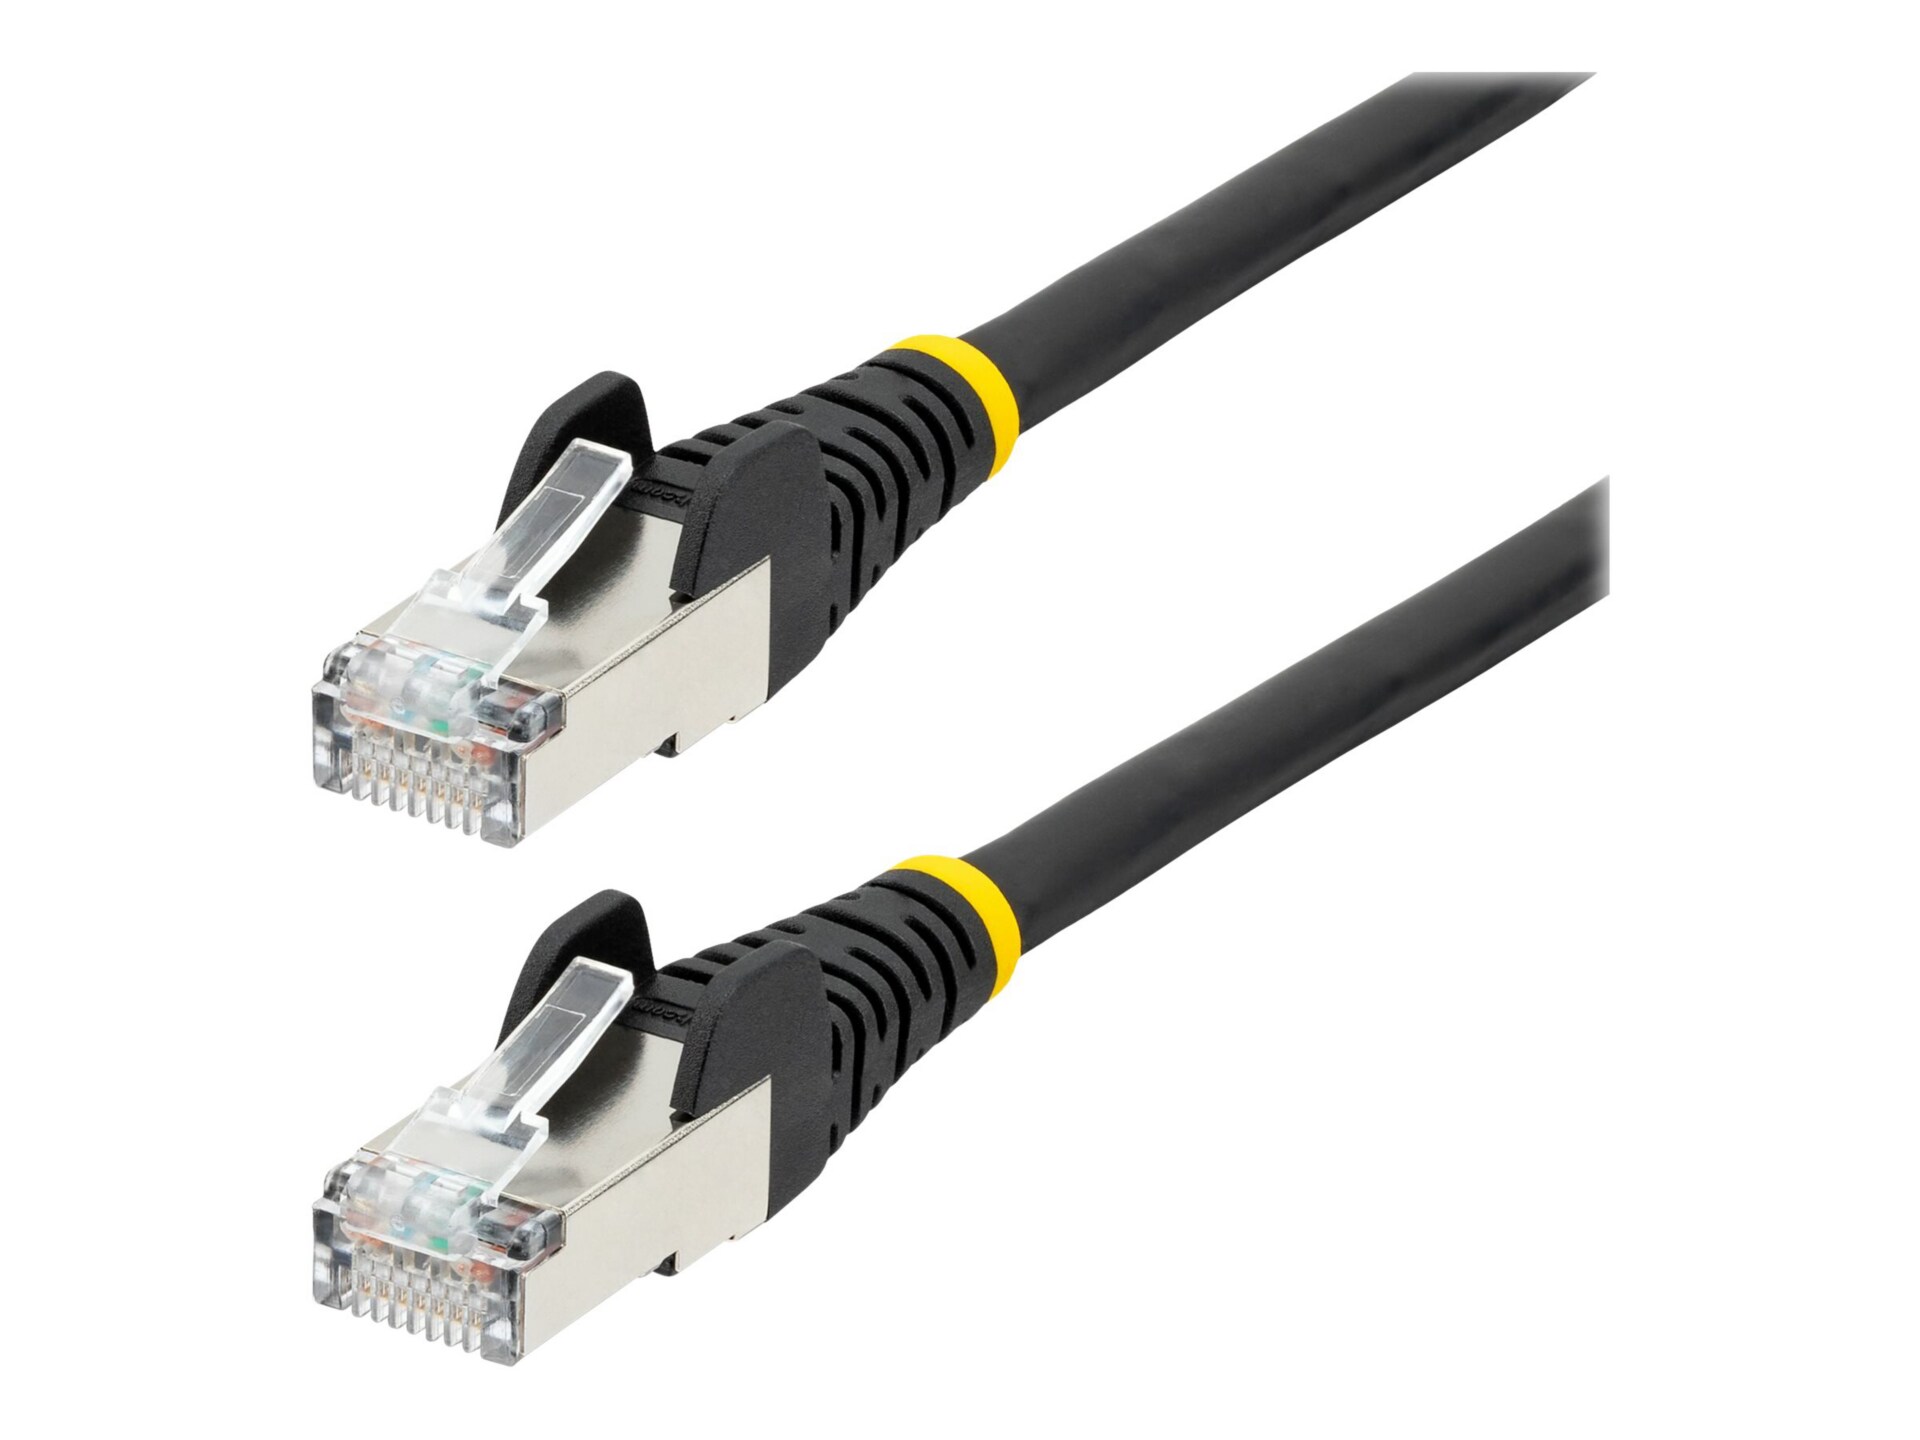 StarTech.com 9ft CAT6a Ethernet Cable, Black Low Smoke Zero Halogen (LSZH)